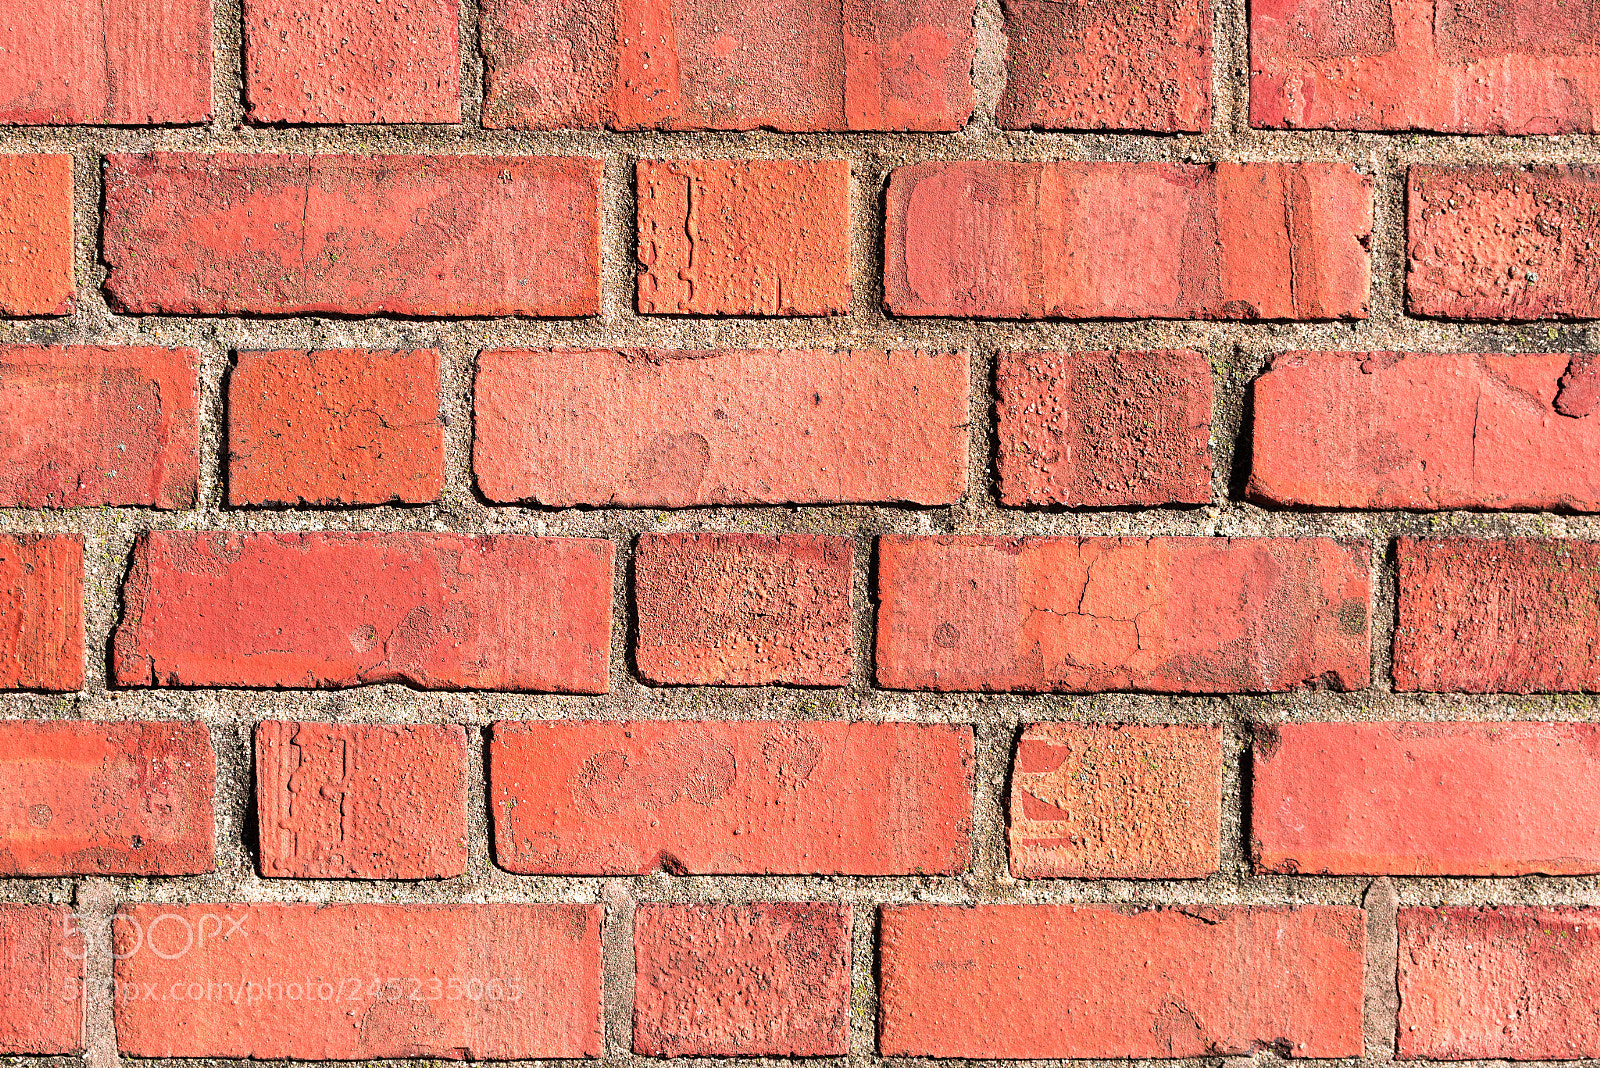 Nikon D750 sample photo. Red brick wall close photography